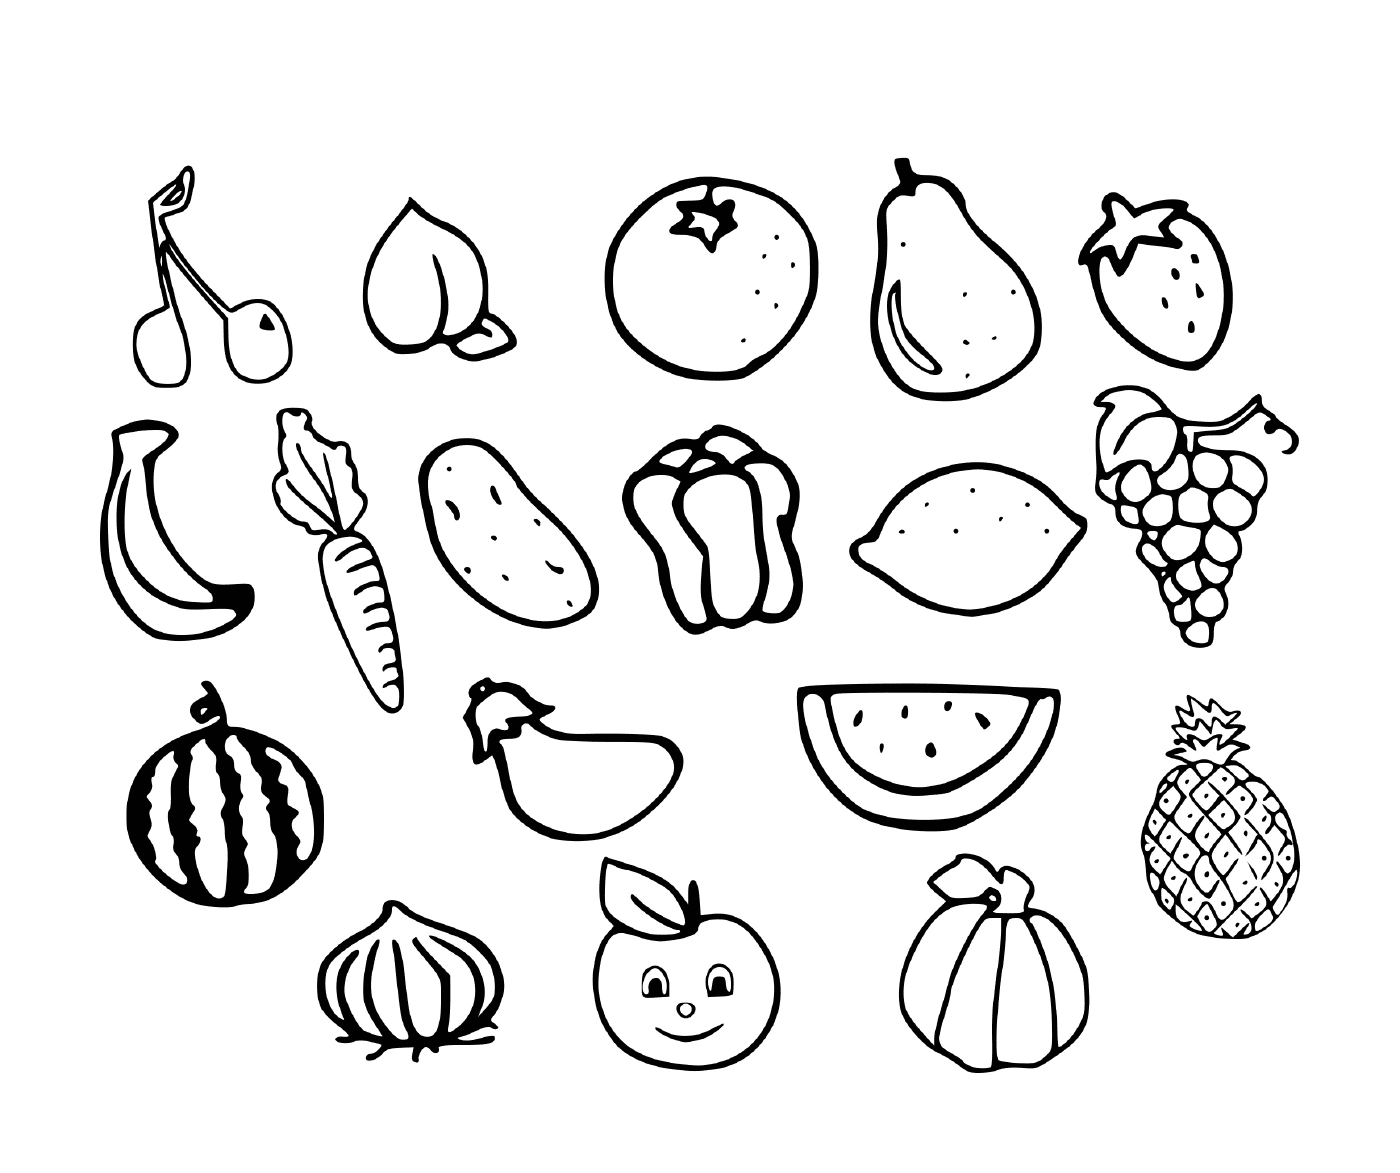   Fruits et légumes dessinés 